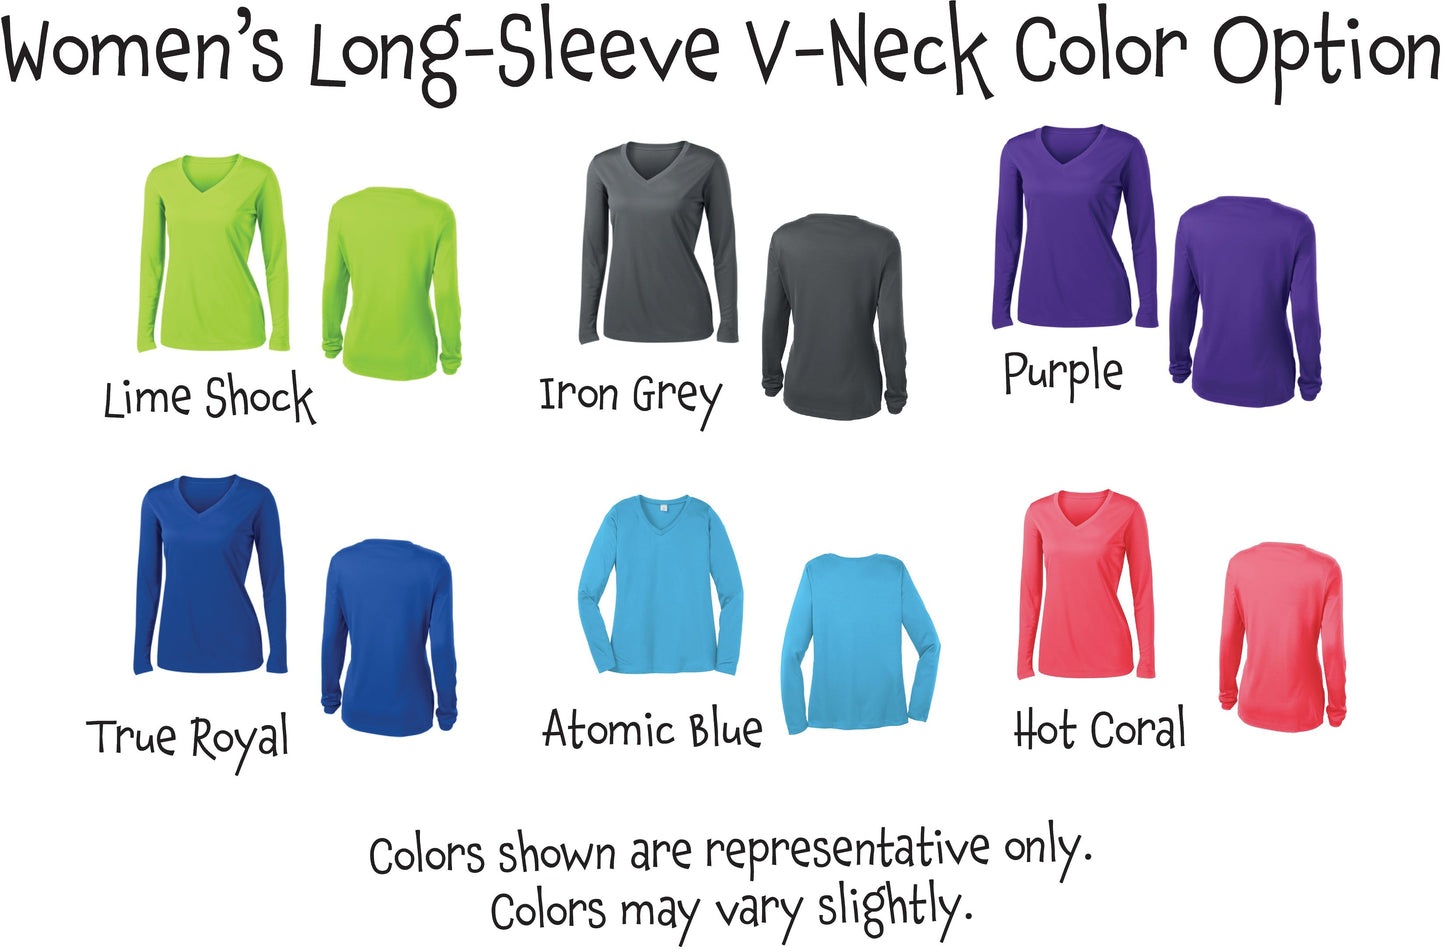 Sorry Can't Pickleball Bye | Women’s Long Sleeve V-Neck Shirt | 100% Polyester